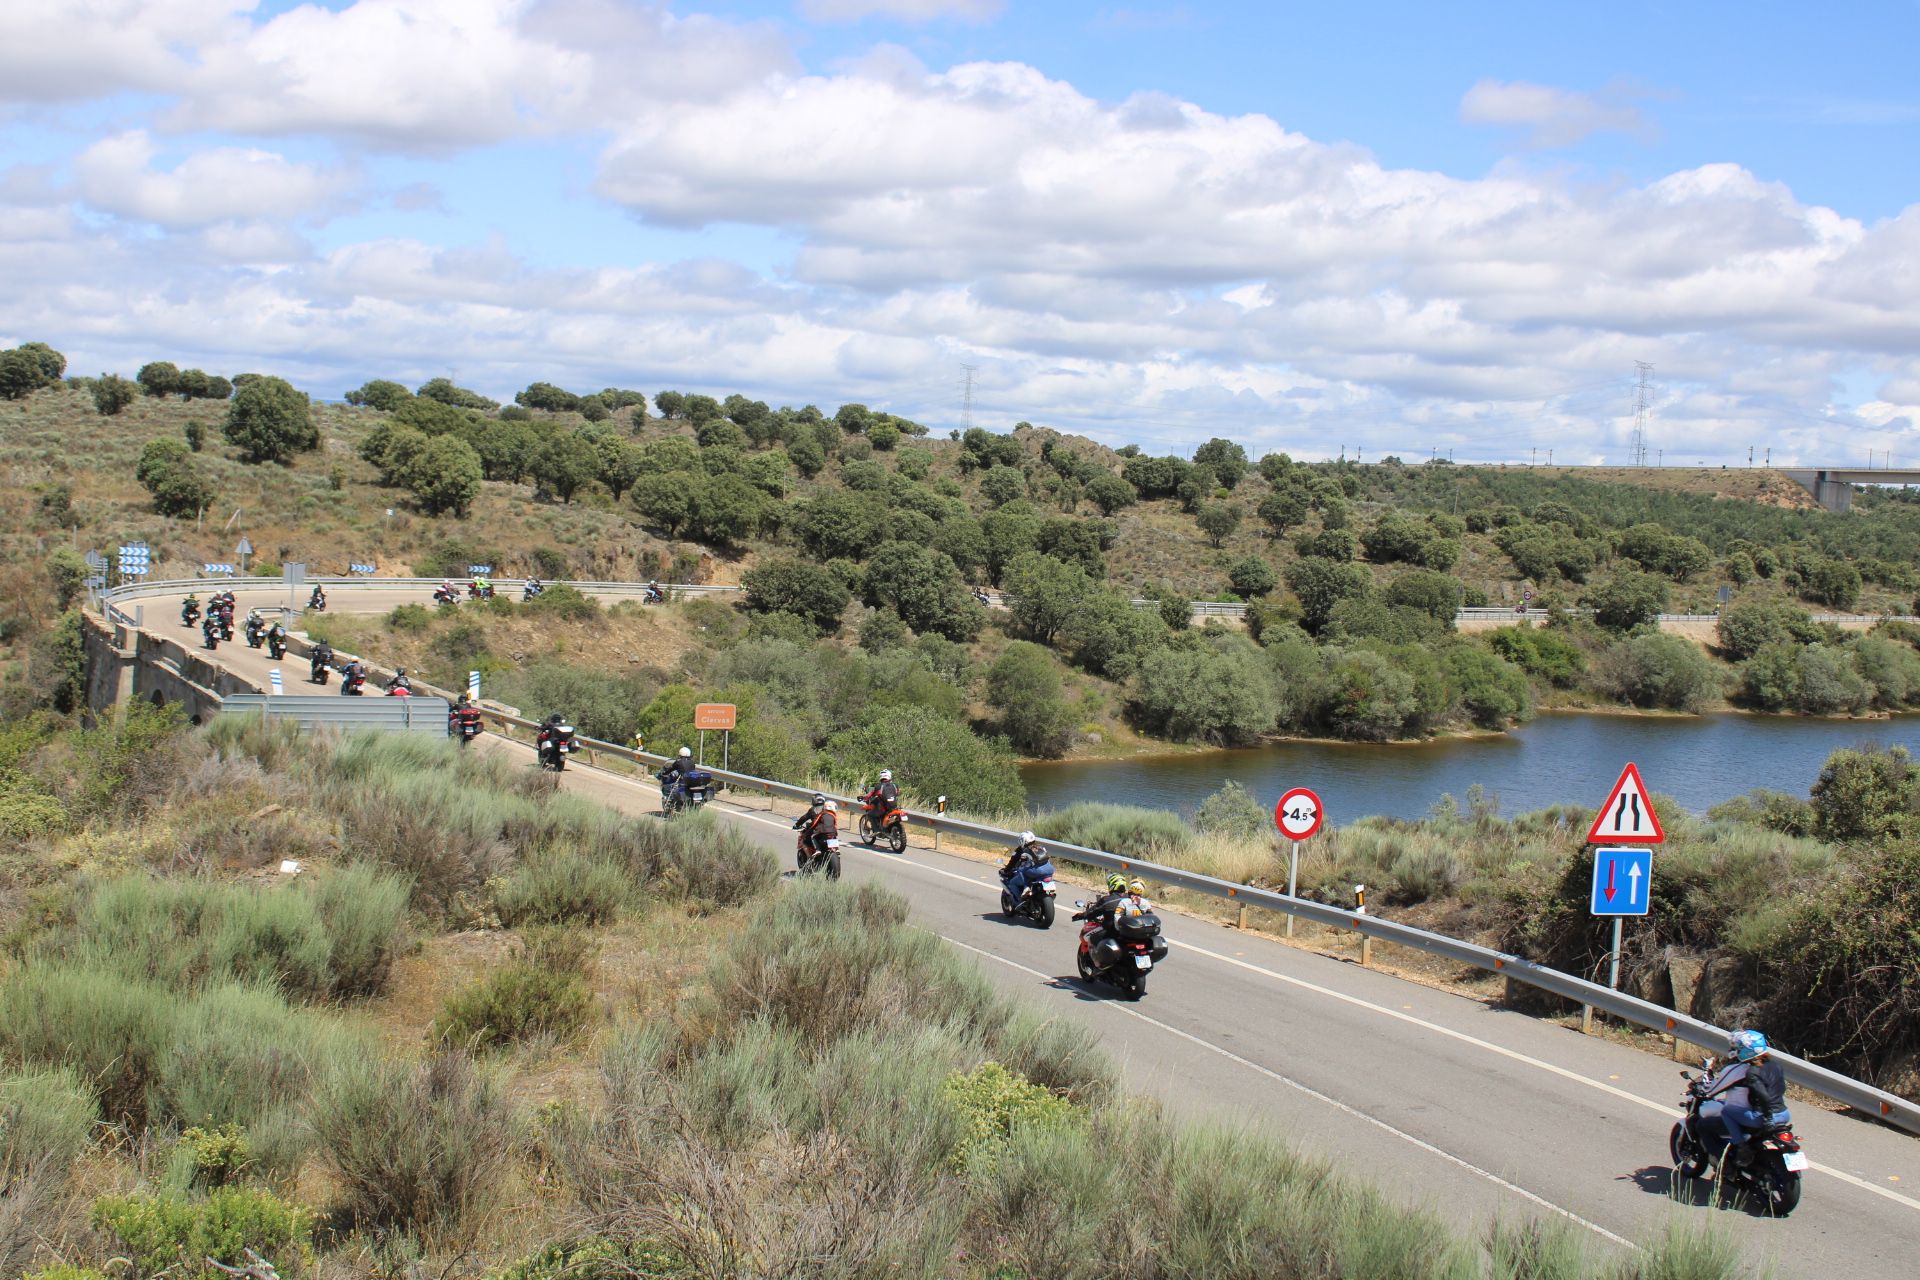 GALERÍA | Ruta de la concentración de motos de Sanabria